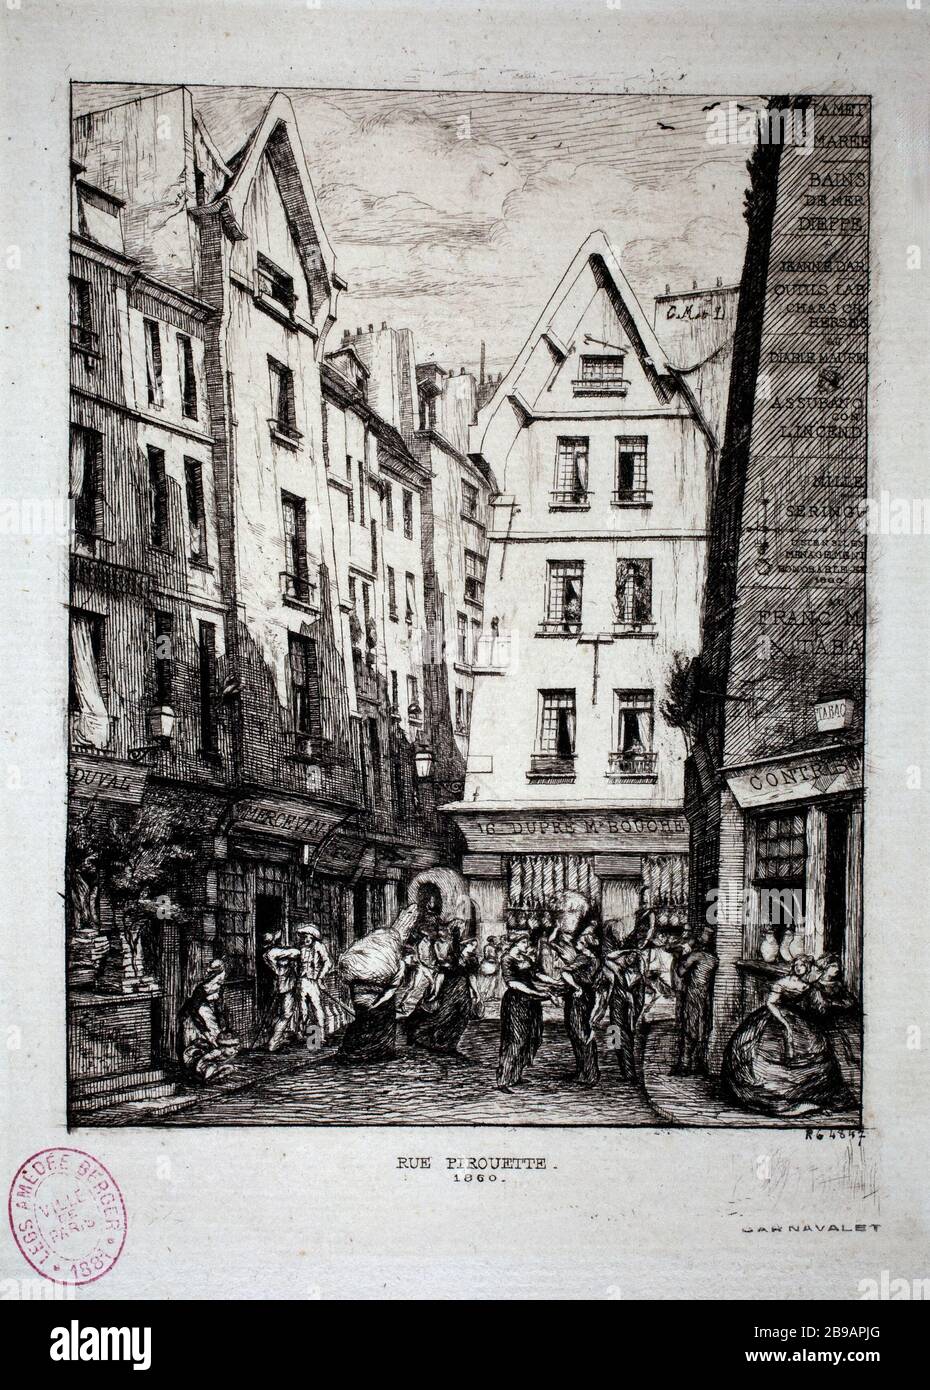 DREHSTRASSE Charles Meryon (1821-1868). "Rue Pirouette". Eau-forte, 1860. Paris, musée Carnavalet. Stockfoto